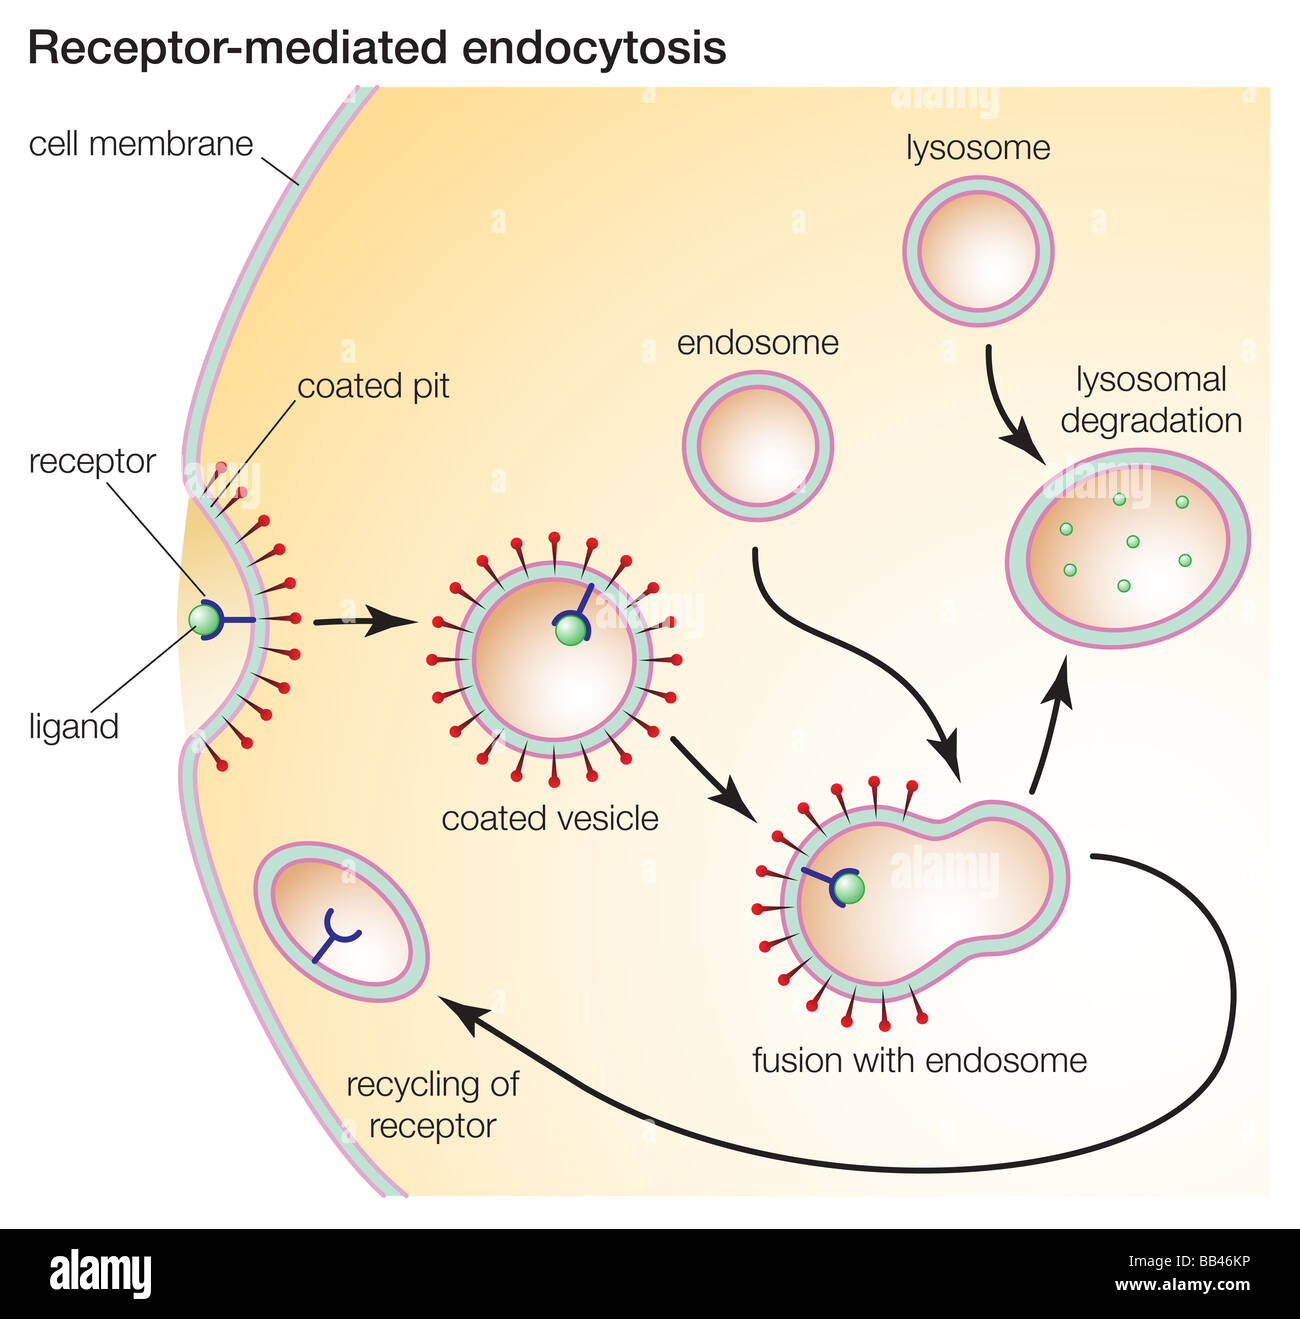 L'endocytose médiée par les récepteurs de cellules permet d'ingérer des molécules telles que les protéines qui sont nécessaires pour le fonctionnement cellulaire normal. Banque D'Images